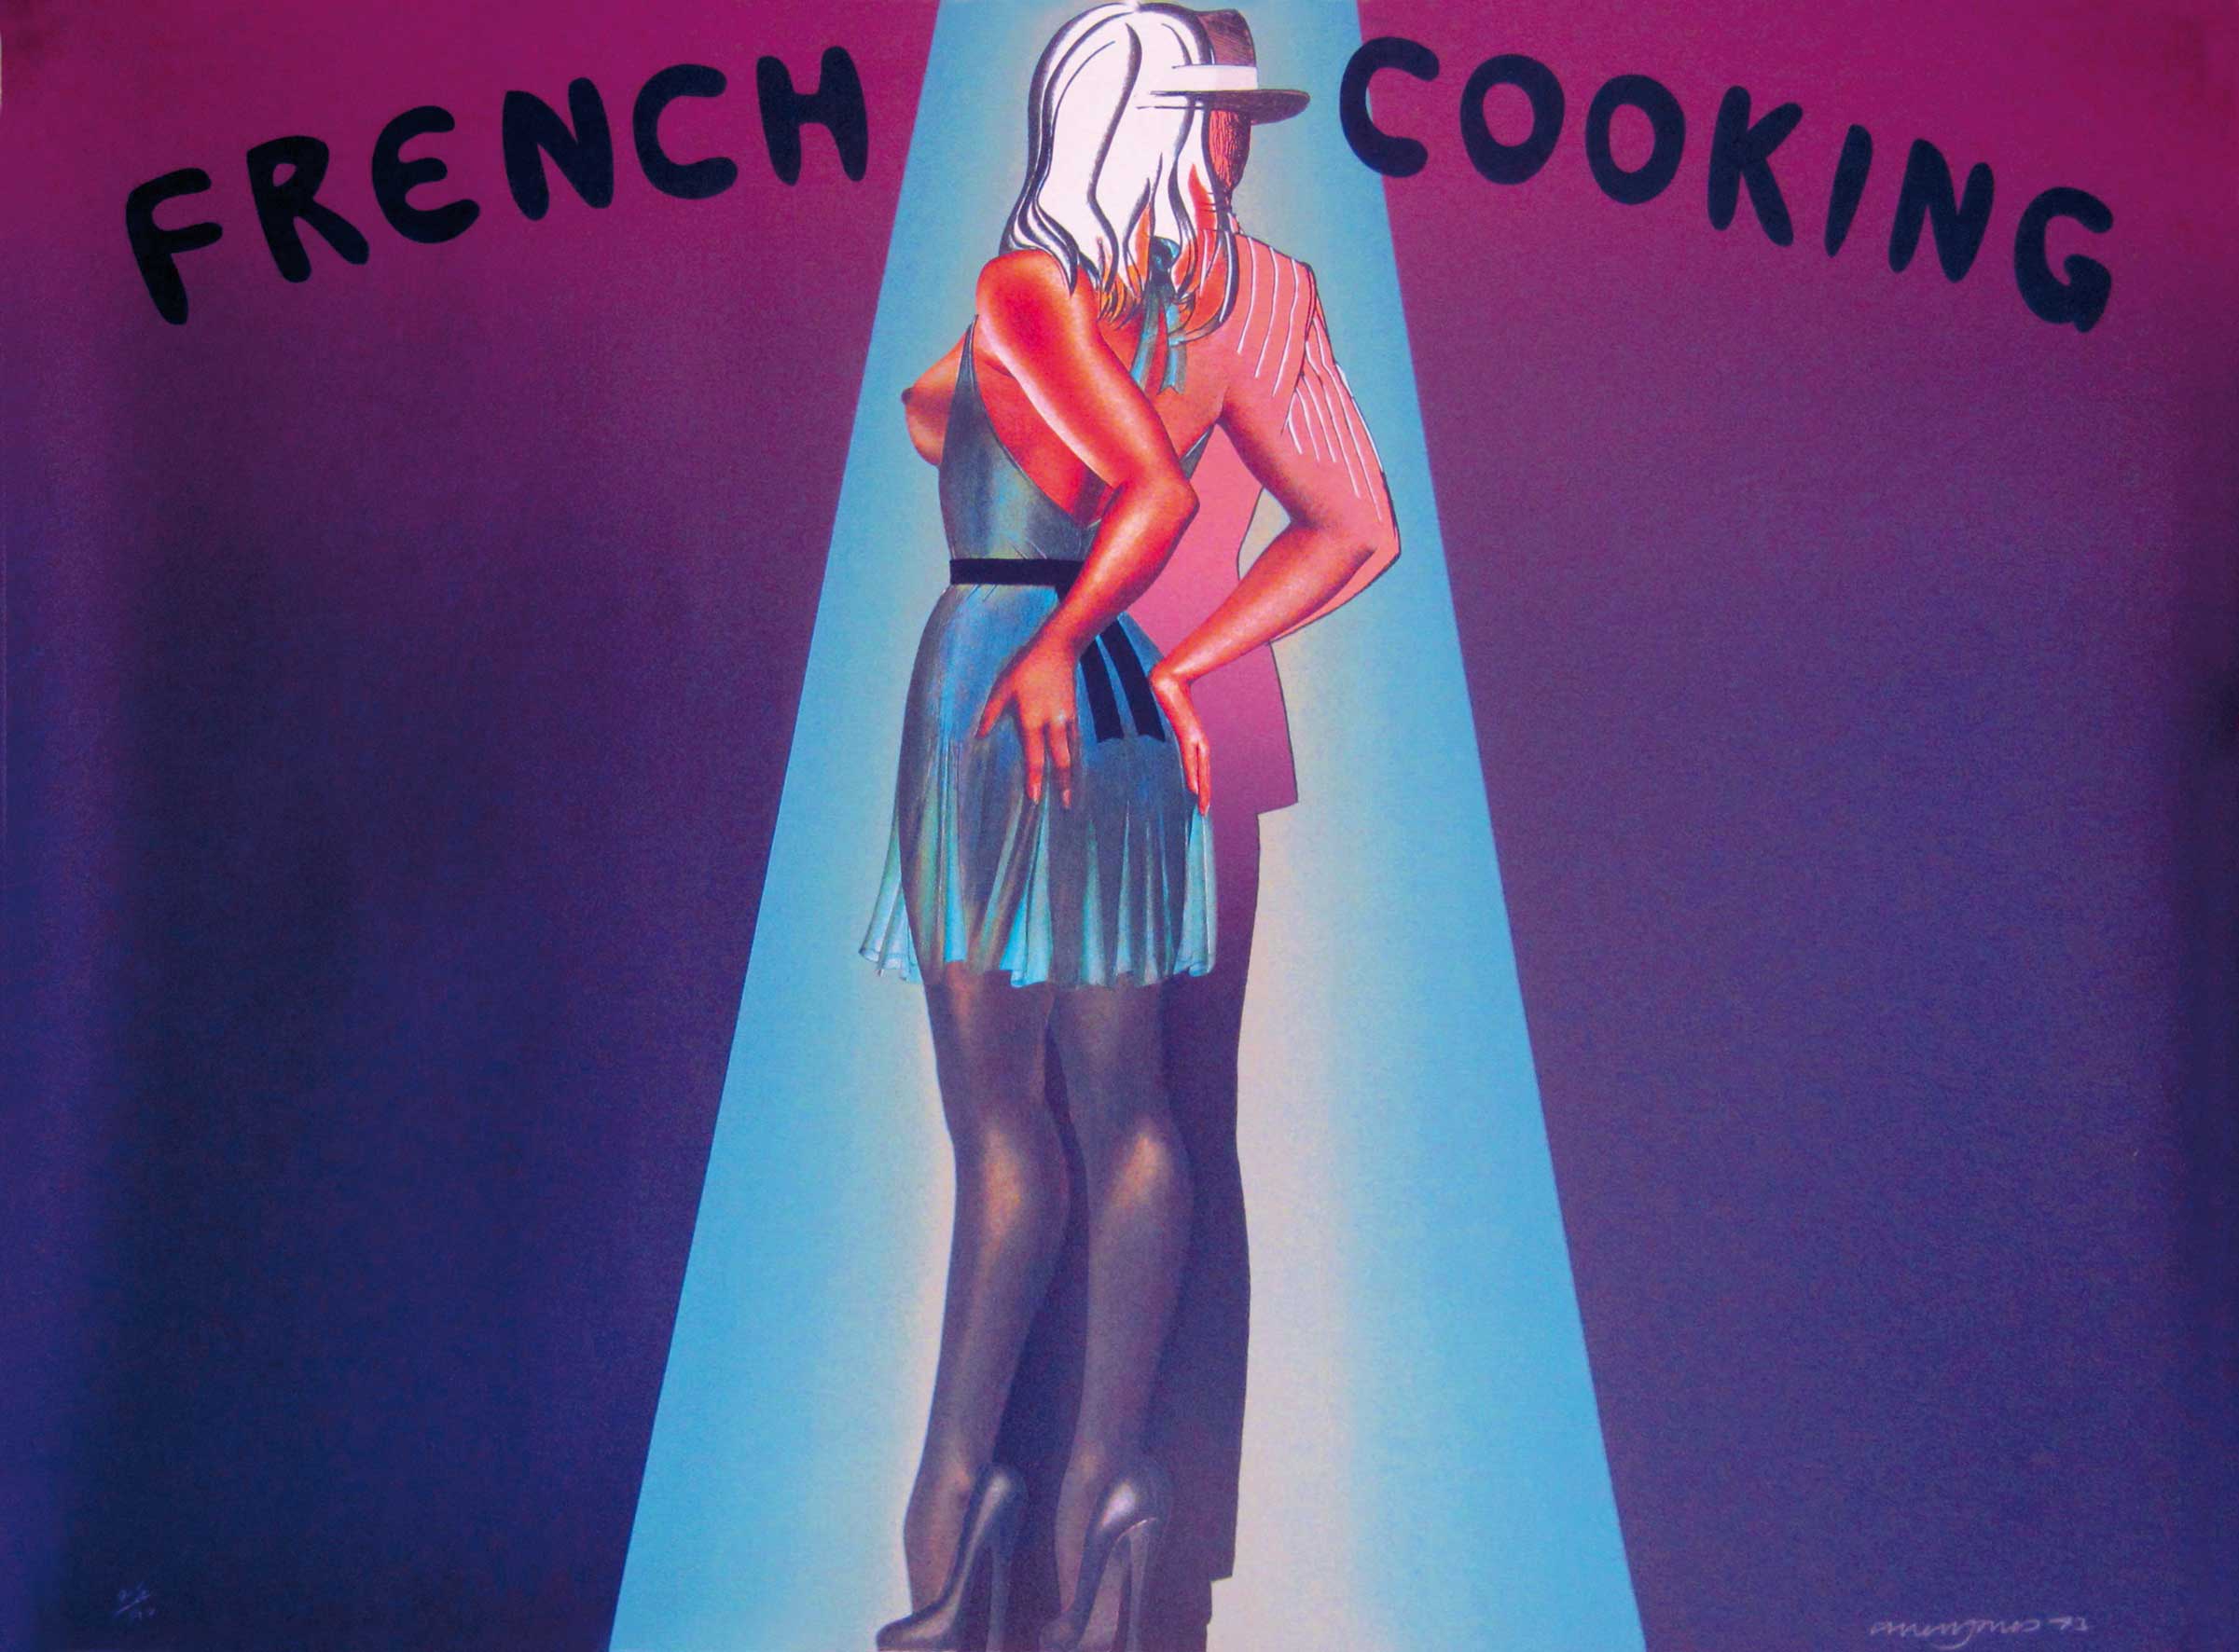 Allen Jones: French Cooking